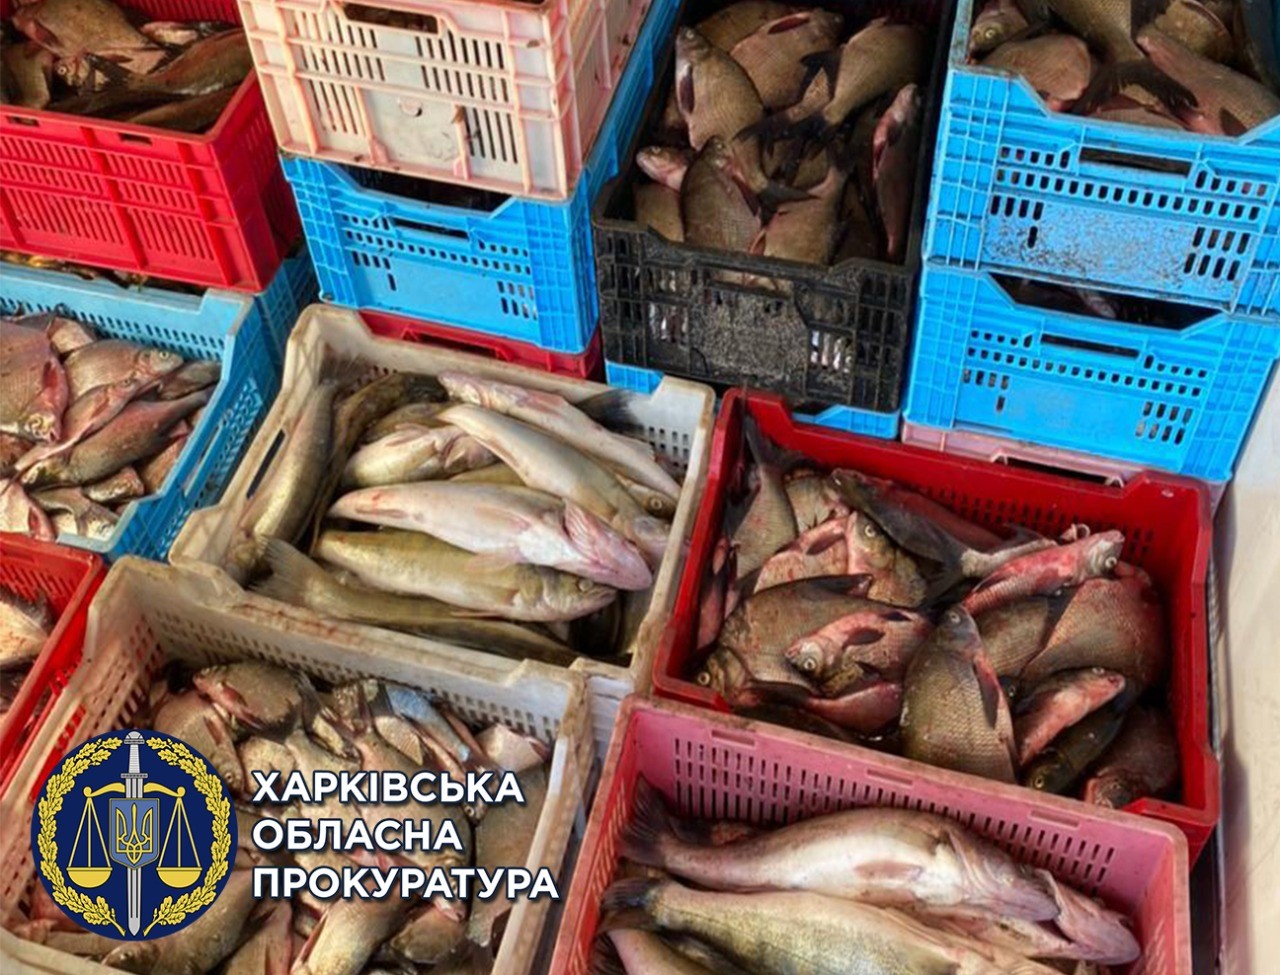 Под Харьковом браконьеры ежедневно ловили тонны рыбы и продавали ее в супермаркеты